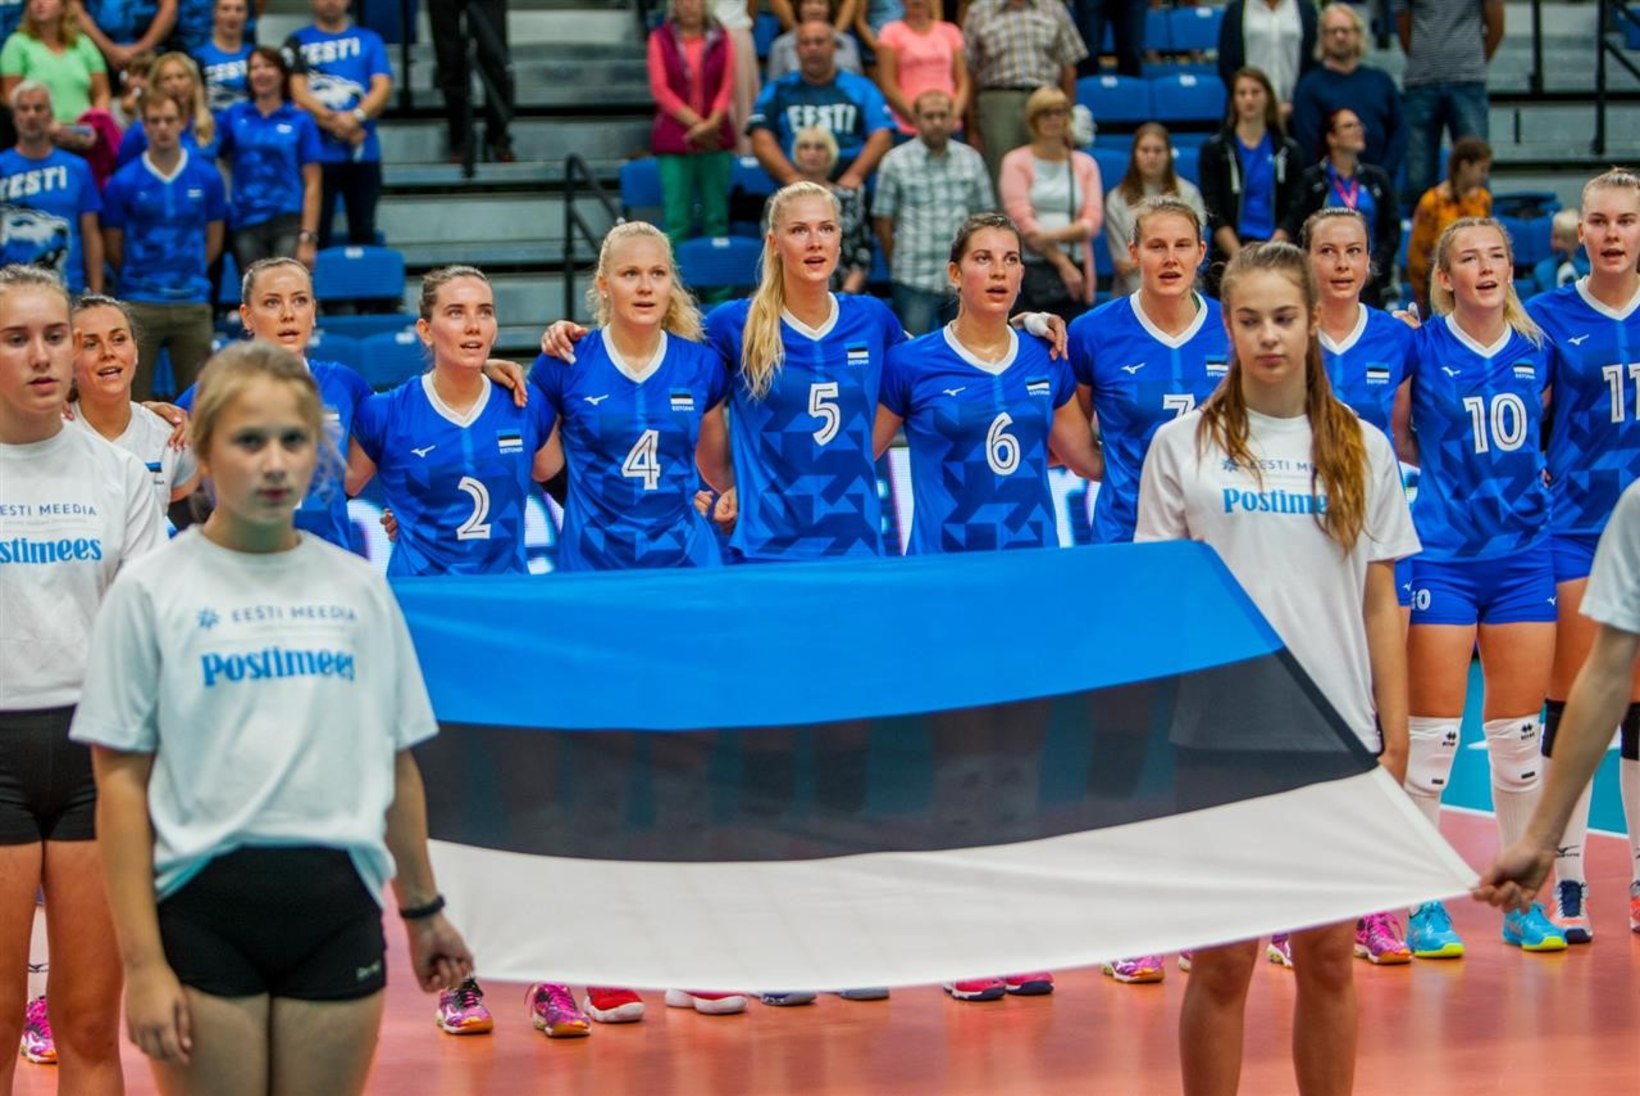 Uskumatu matš! Eesti oli edu maha mängimas, kuid sai lõpuks Tšehhilt magusa revanši